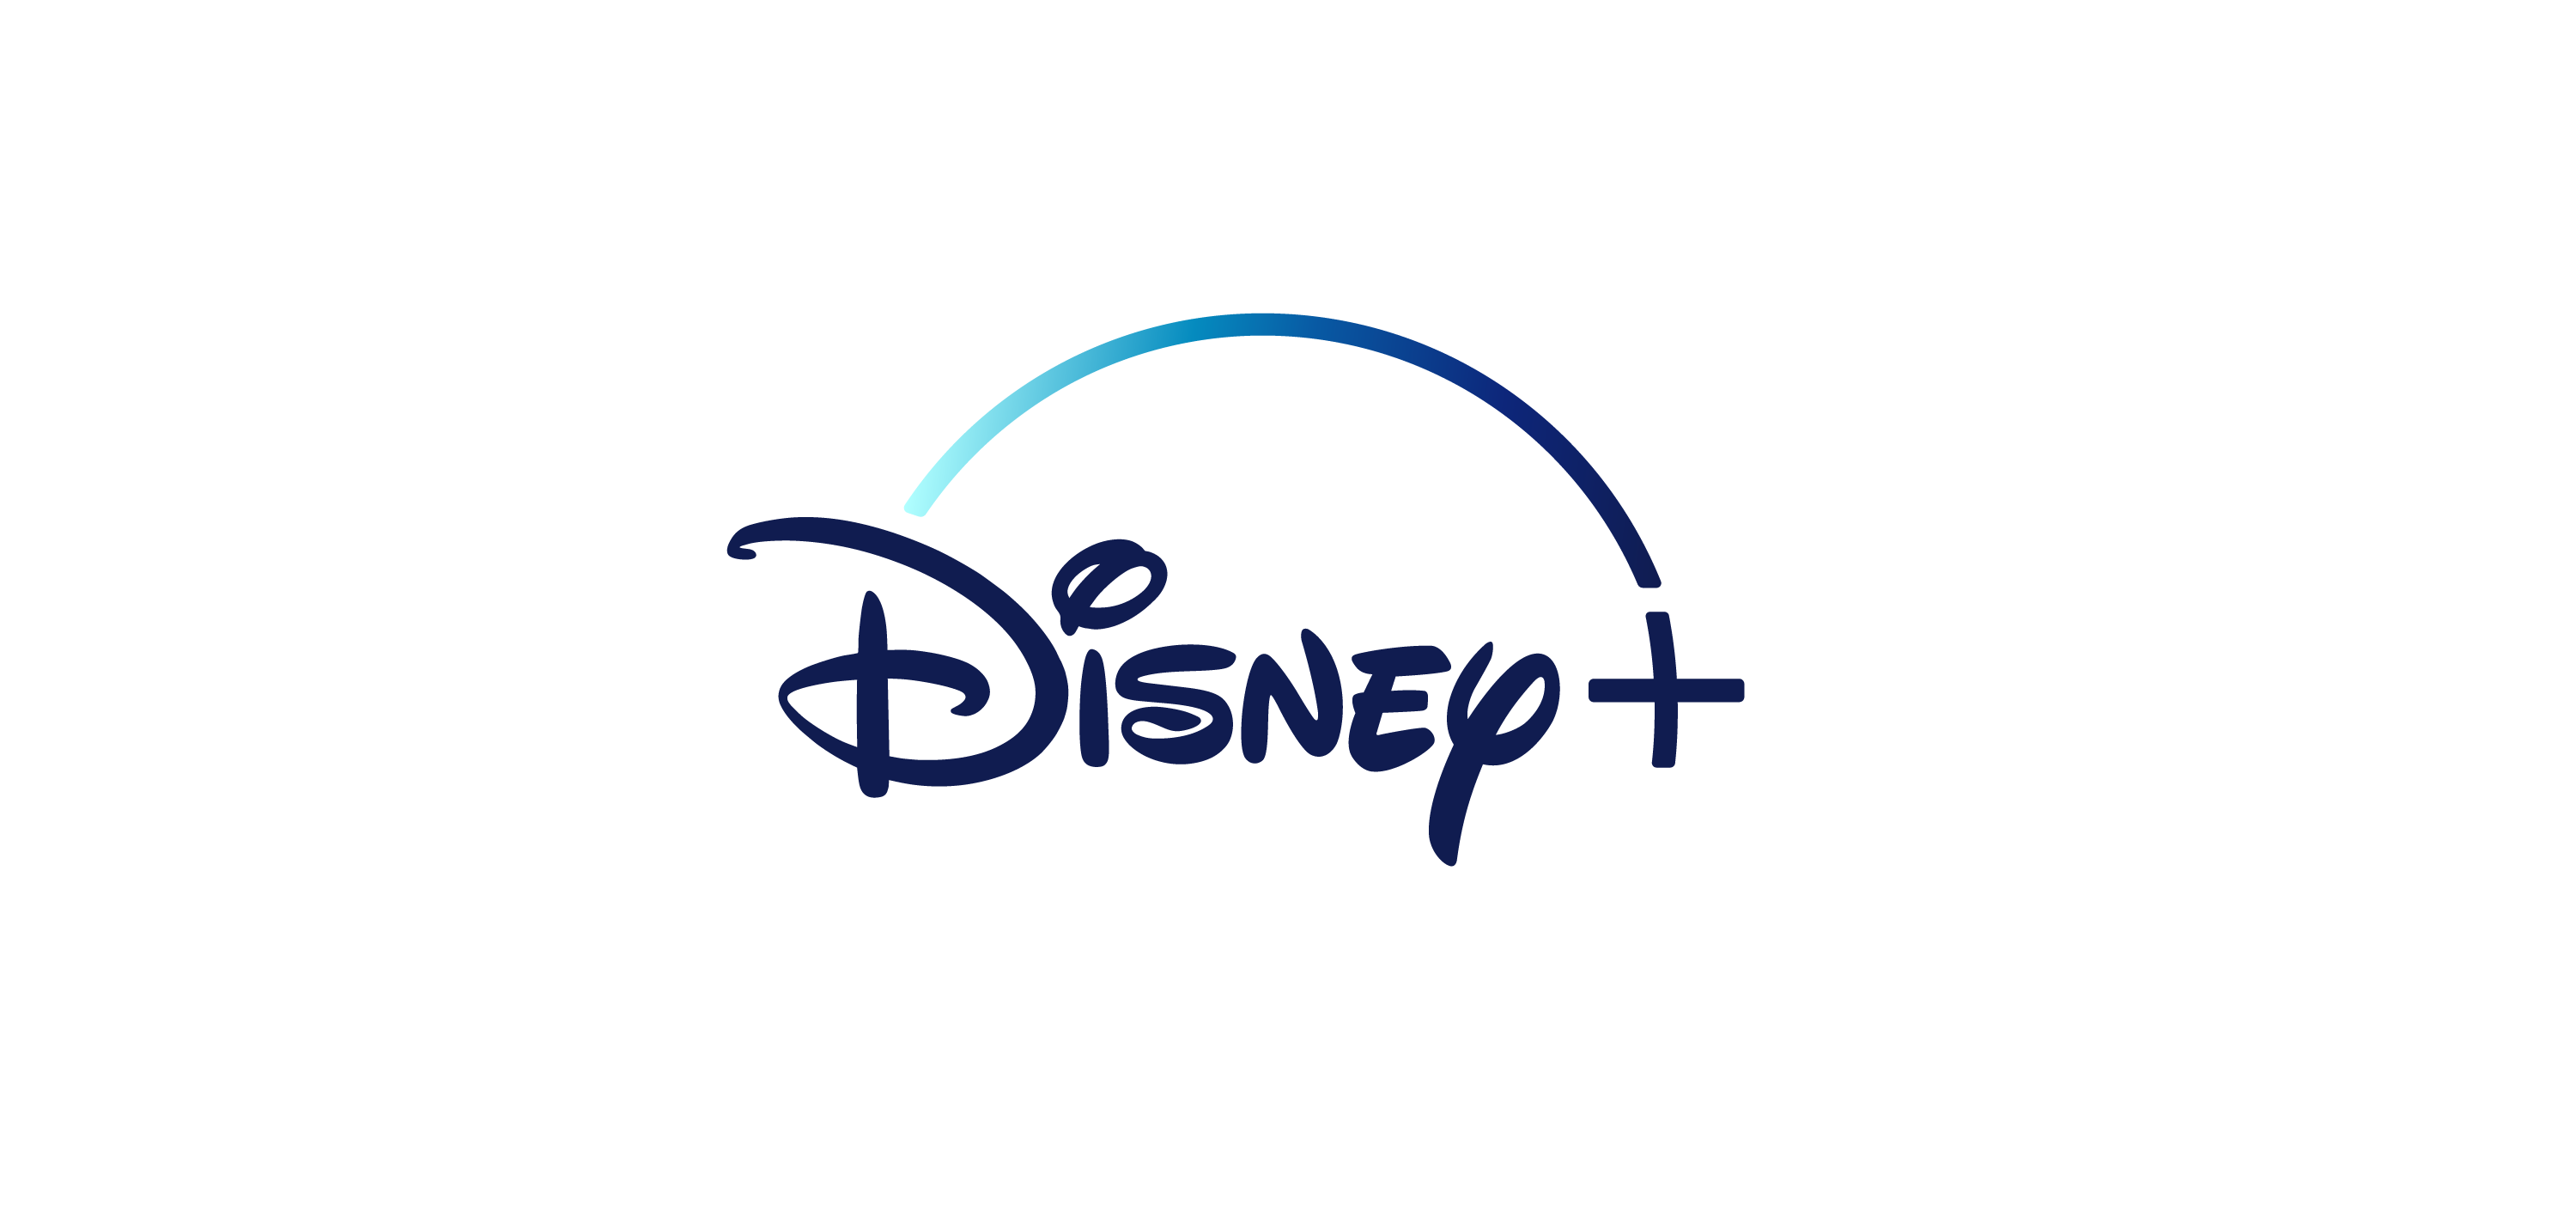 Disney+ logo vector